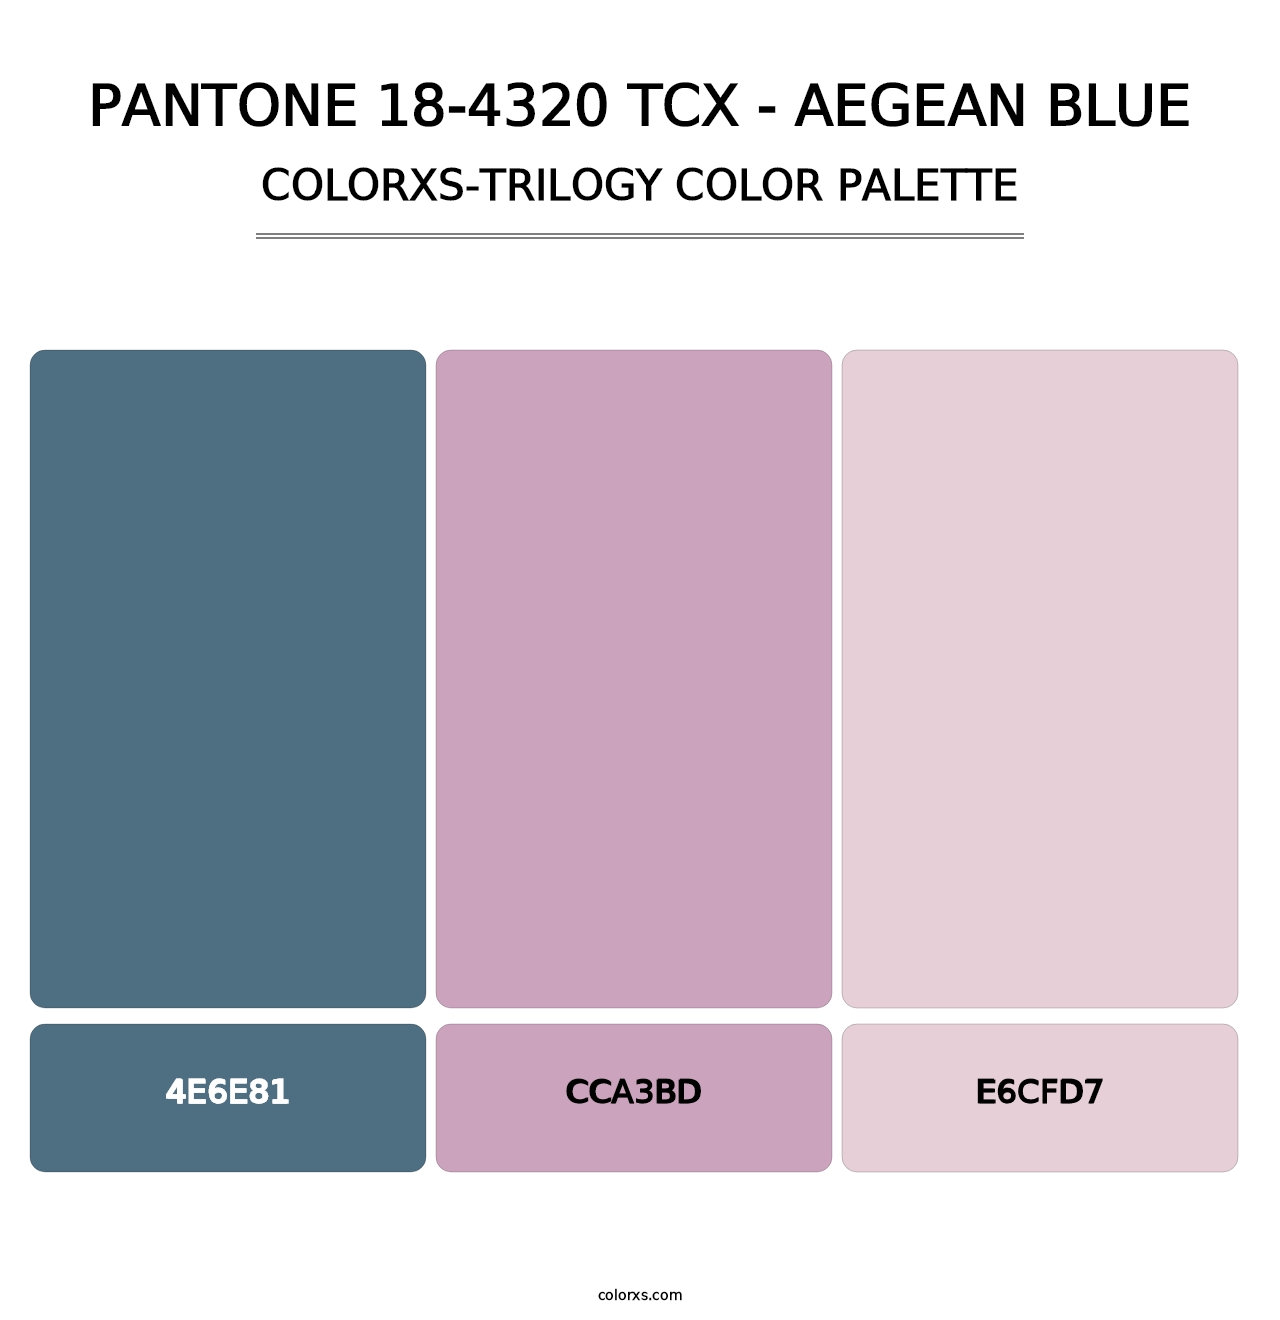 PANTONE 18-4320 TCX - Aegean Blue - Colorxs Trilogy Palette